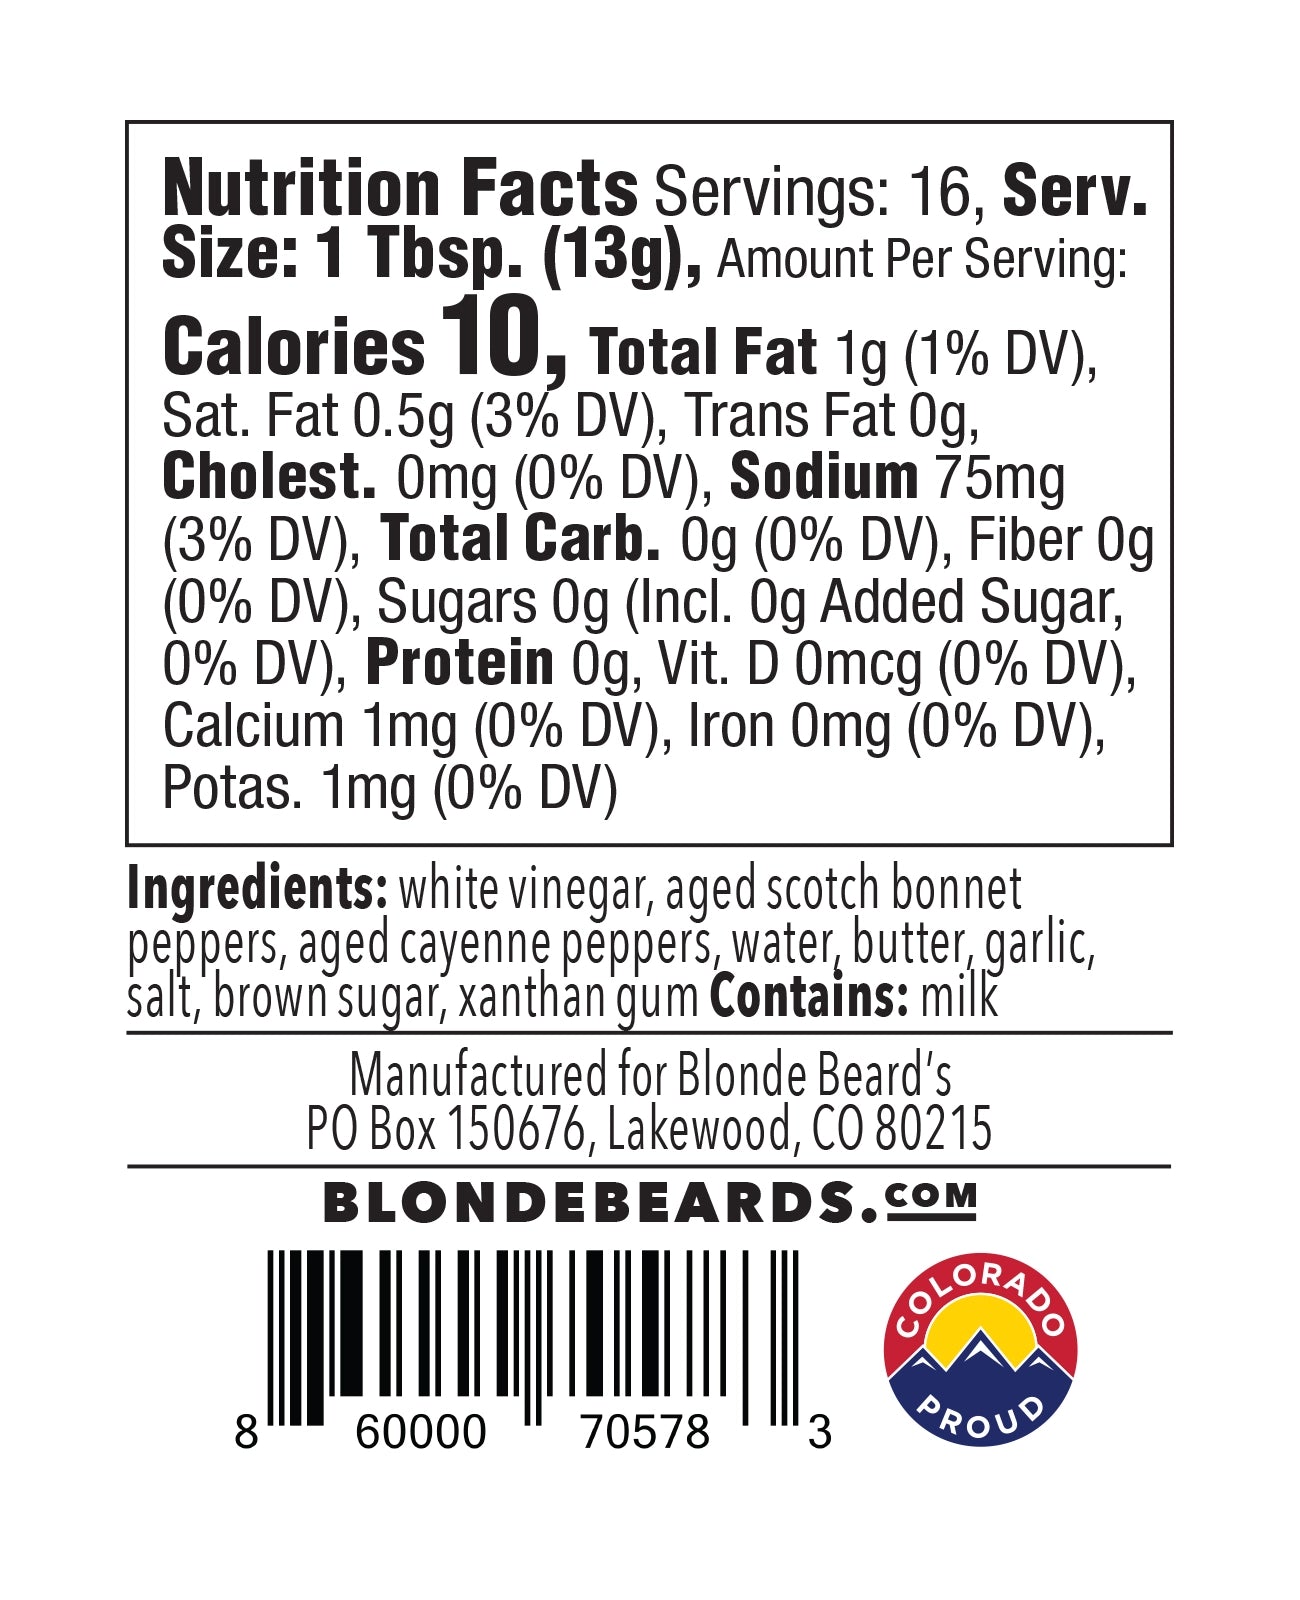 Ten (10) calories per serving of Blonde Beard's Holy Hell Buffalo Sauce.